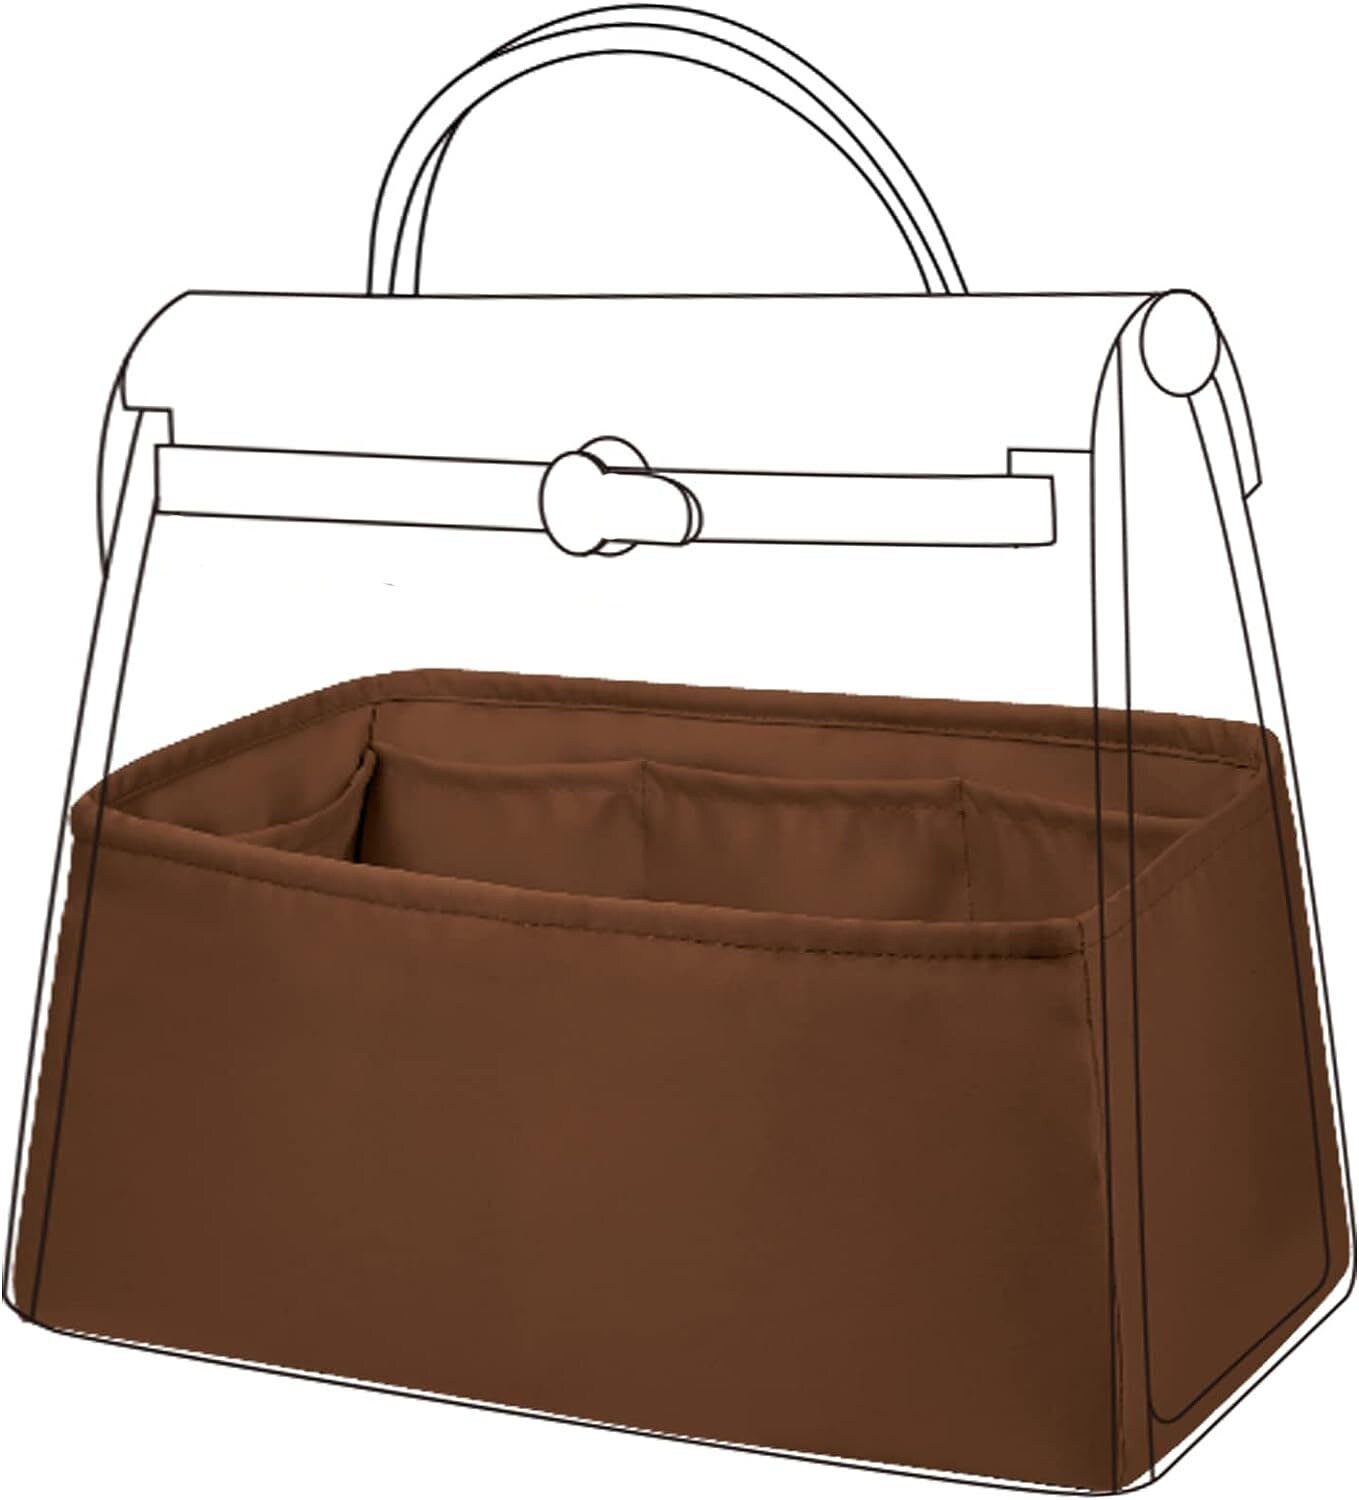 Lckaey for hermes Herbag bags for women bag 39 insert Handbag Shapers  1011brown-37.5 * 13 * 17cm